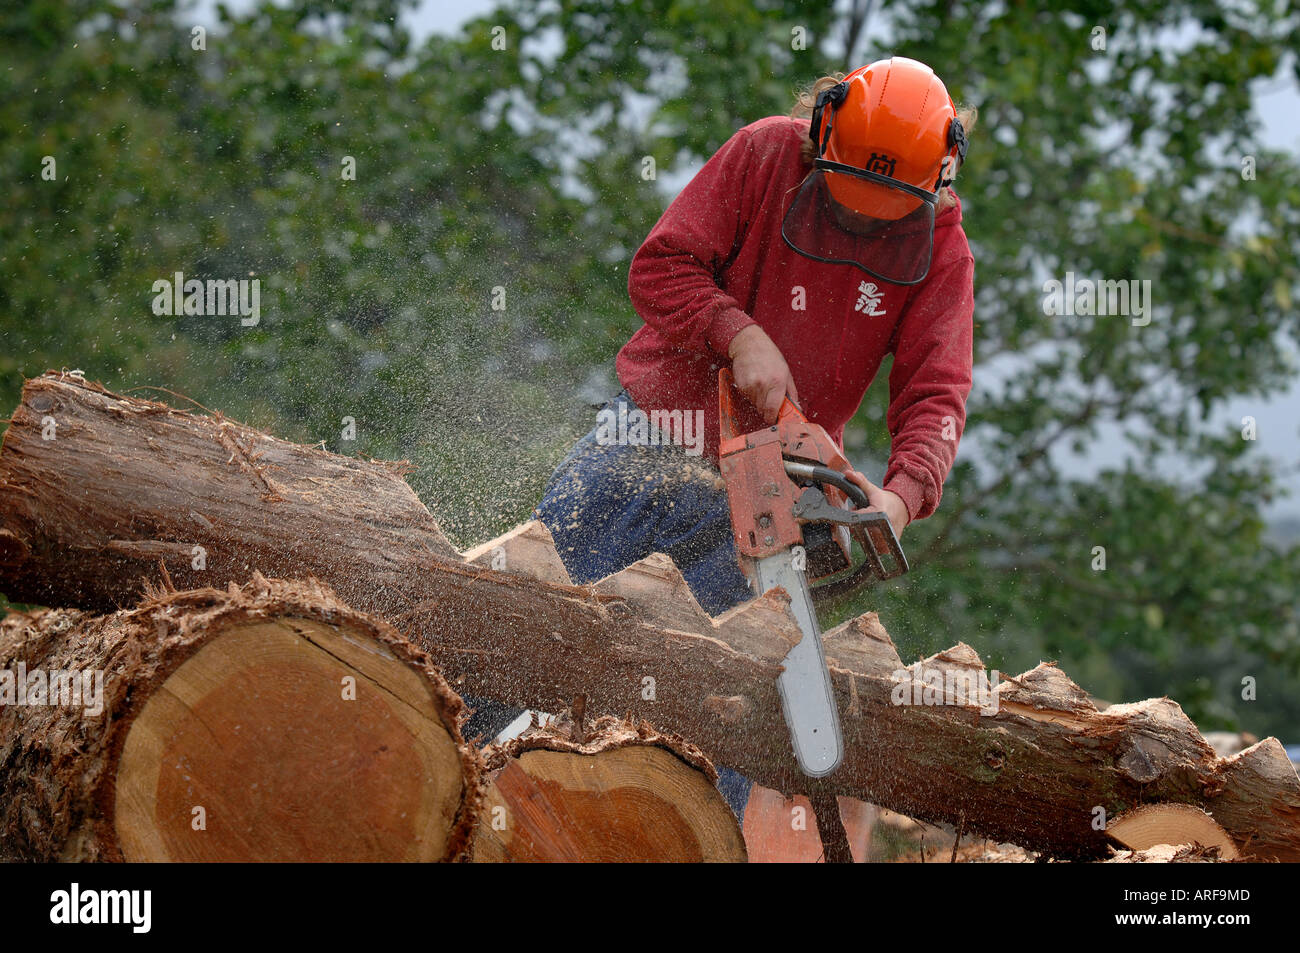 Künstler arbeiten bei den Festspielen Kettensäge schnitzen einen Mann  schnitzen Holz mit einer Kettensäge Stockfotografie - Alamy